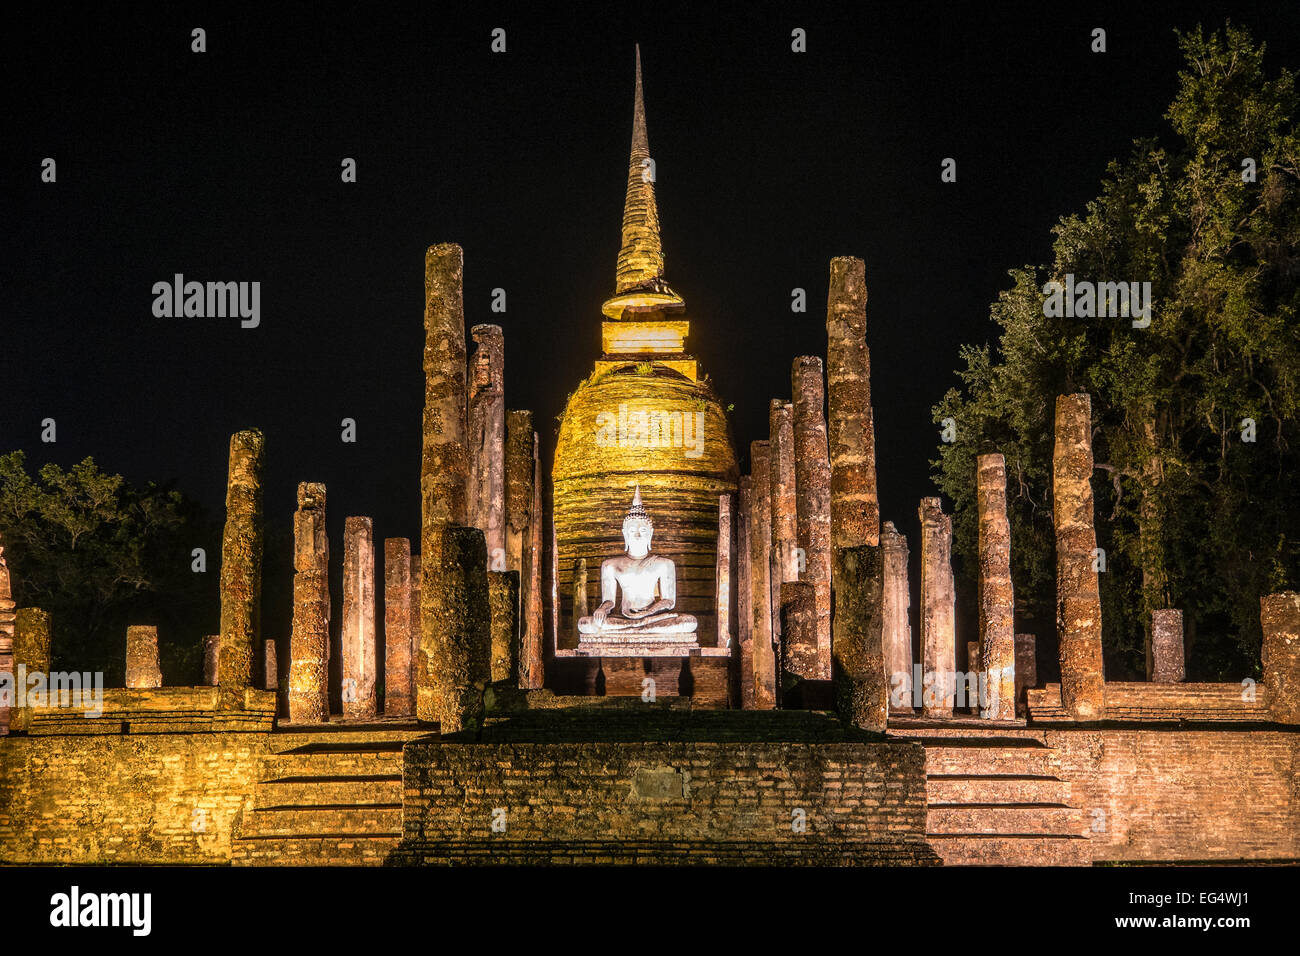 L'Asie. La Thaïlande, l'ancienne capitale du Siam. Parc archéologique de Sukhothai, classé au Patrimoine Mondial de l'UNESCO. Wat Sa Sri par nuit. Banque D'Images